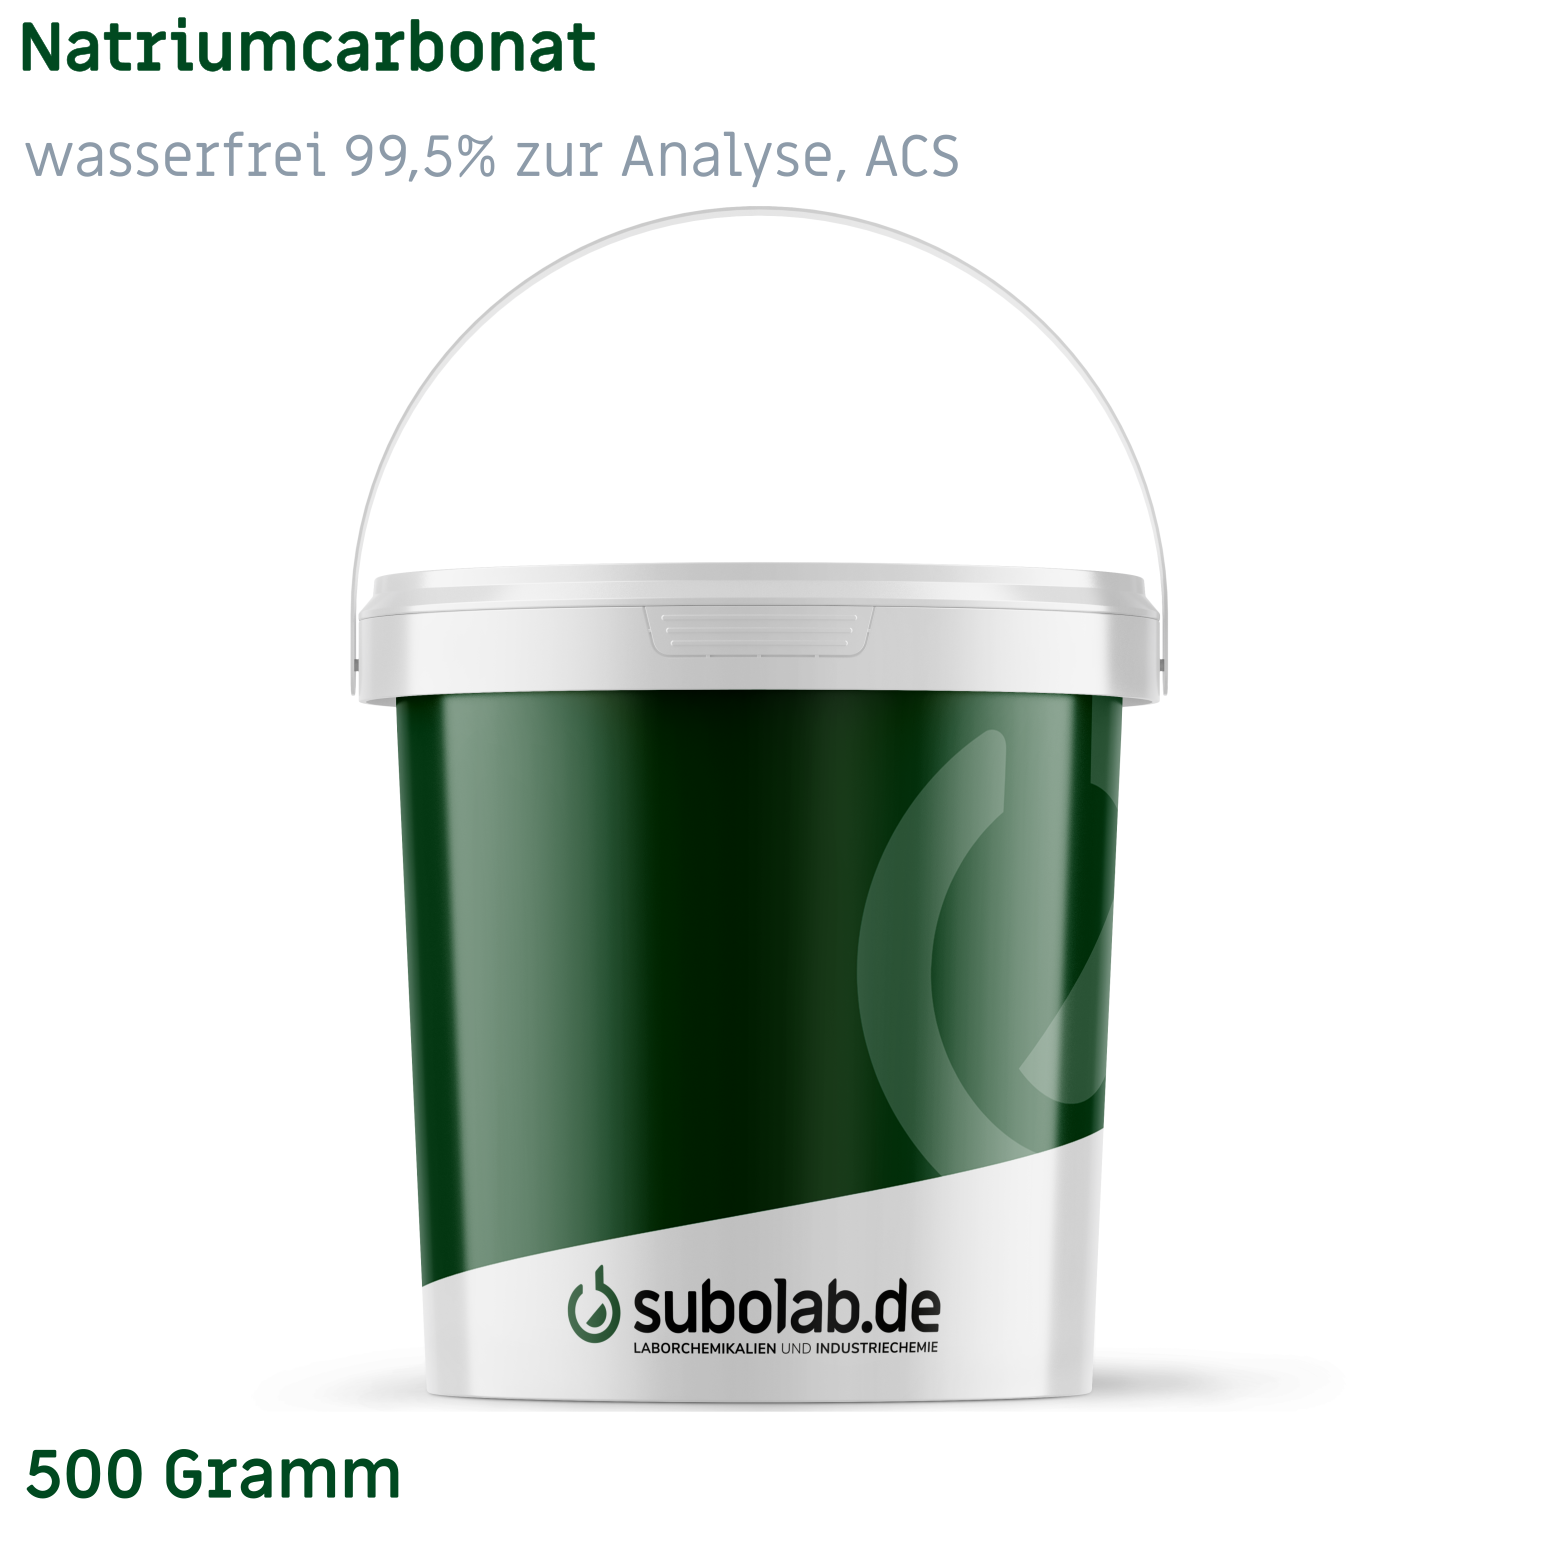 Bild von Natriumcarbonat - wasserfrei 99,5% zur Analyse, ACS (500 Gramm)